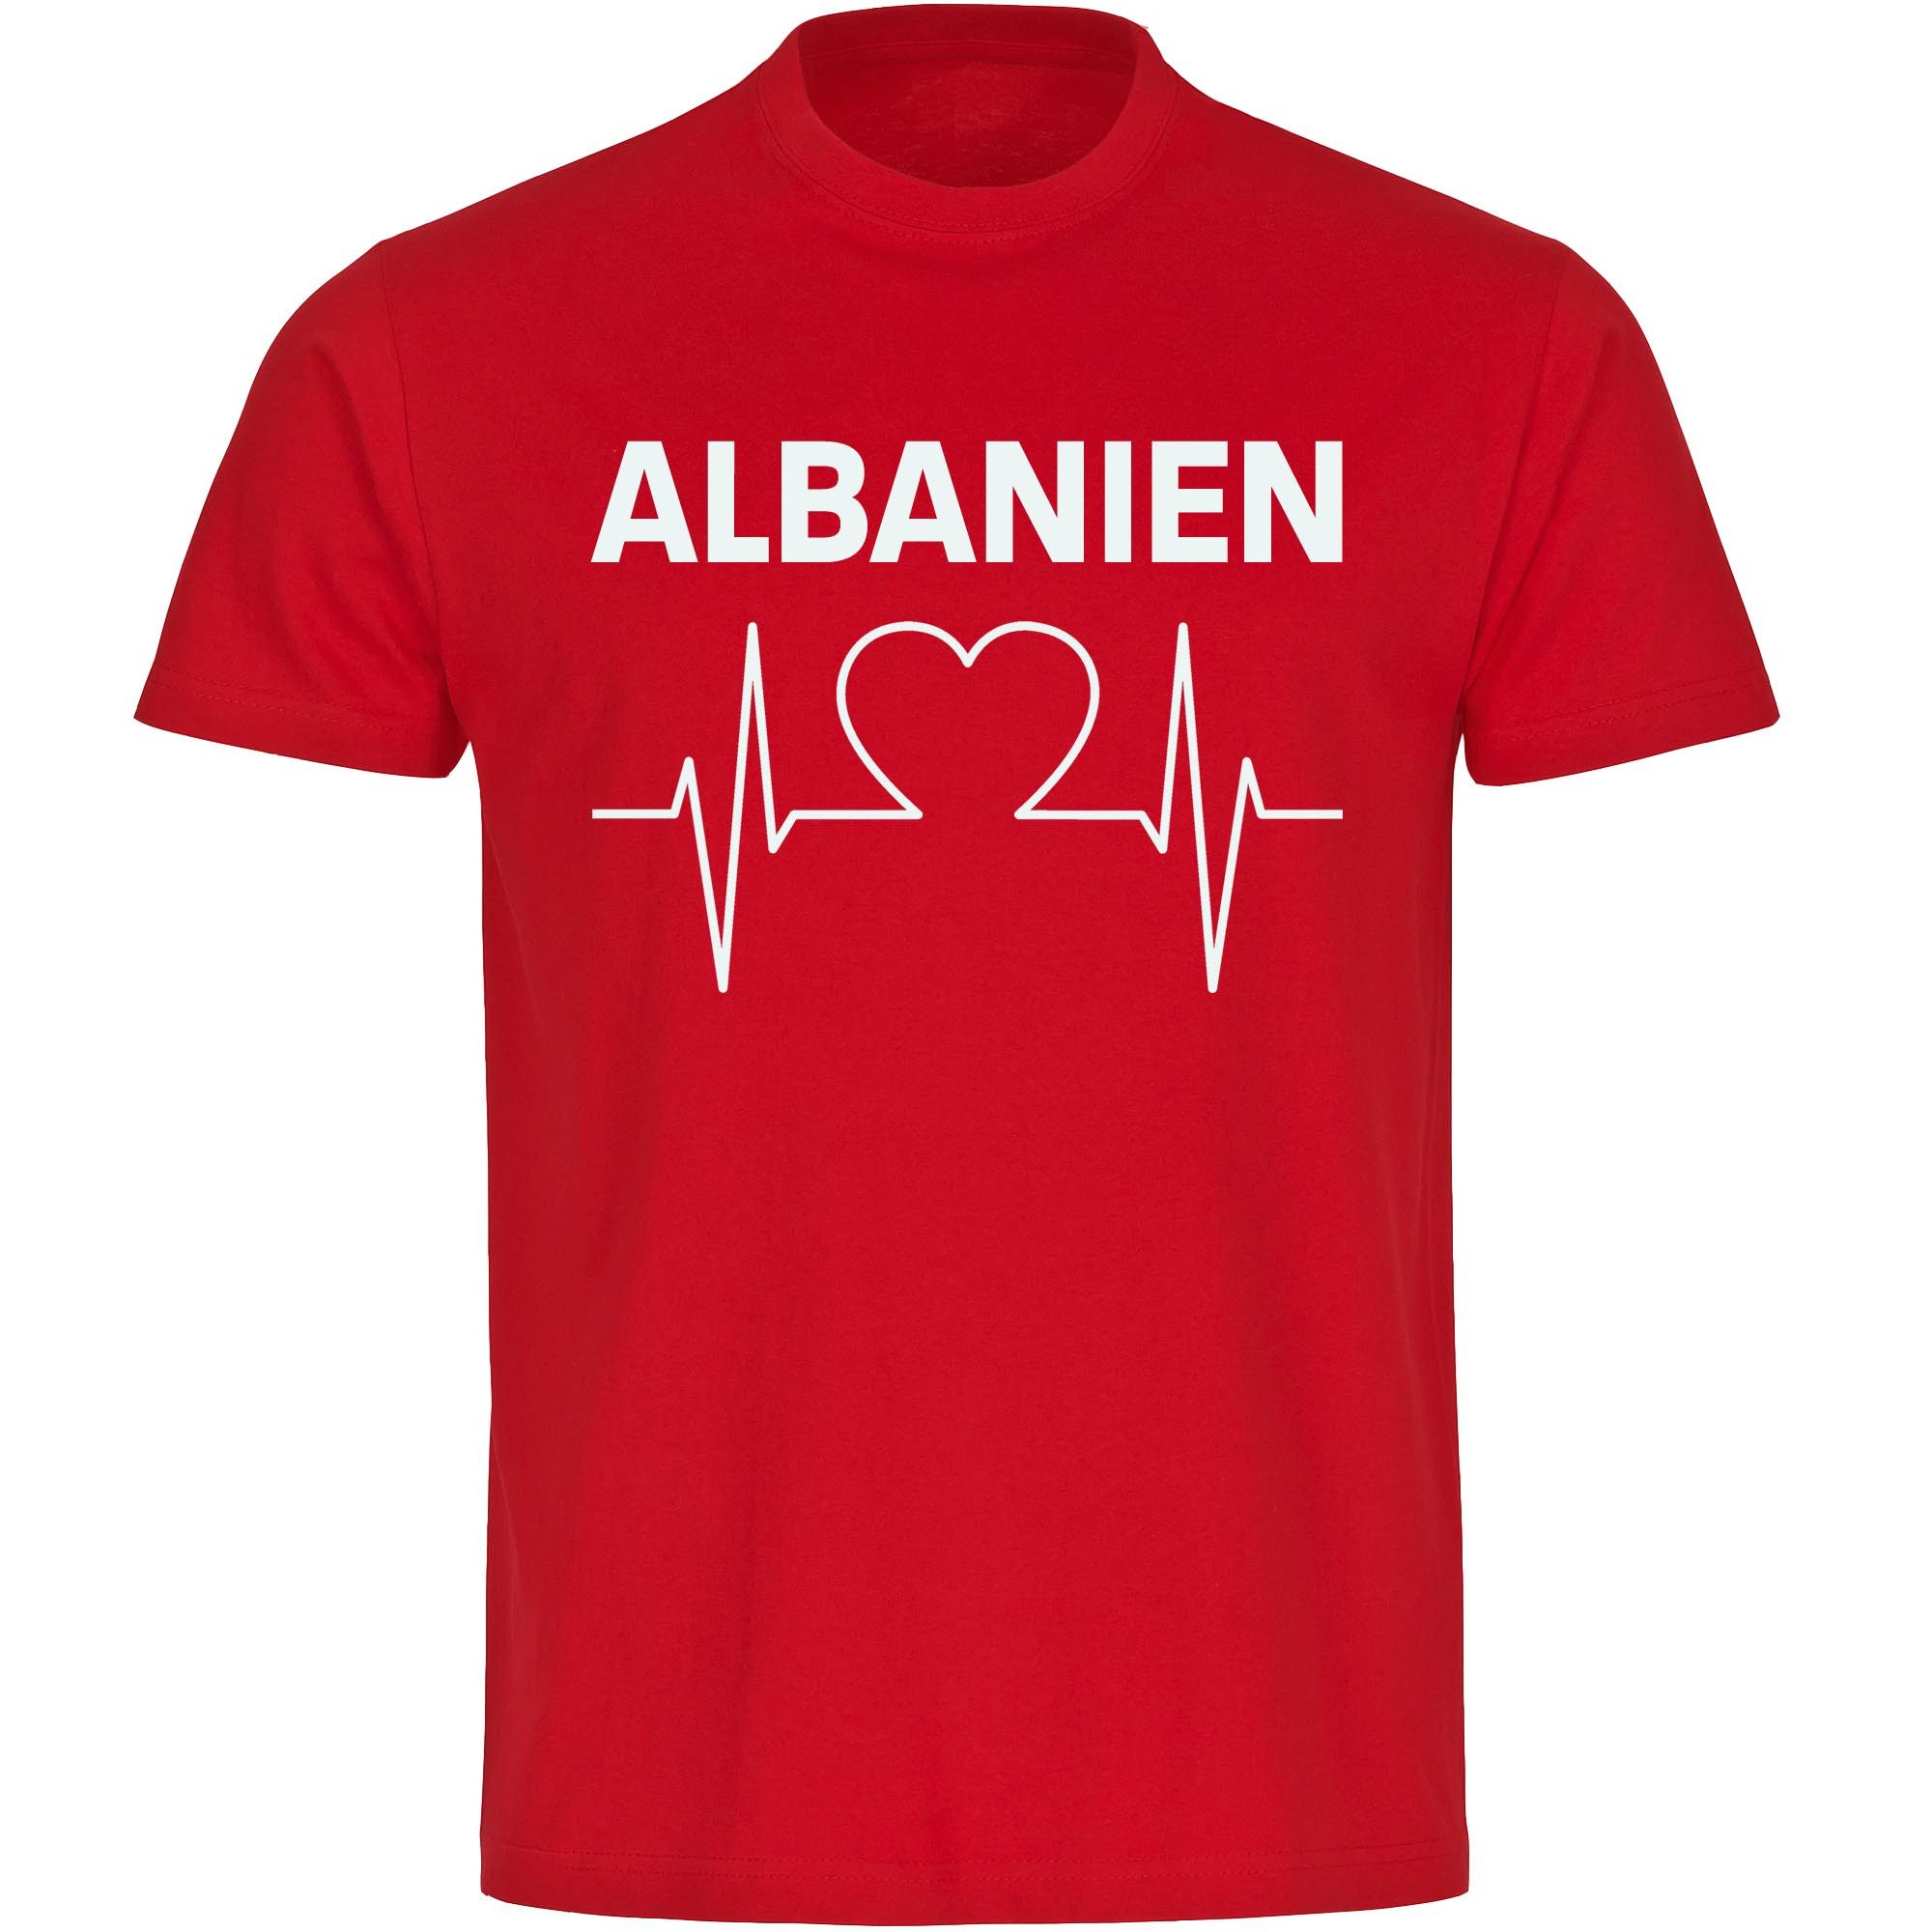 multifanshop T-Shirt Herren Albanien - Herzschlag - Männer